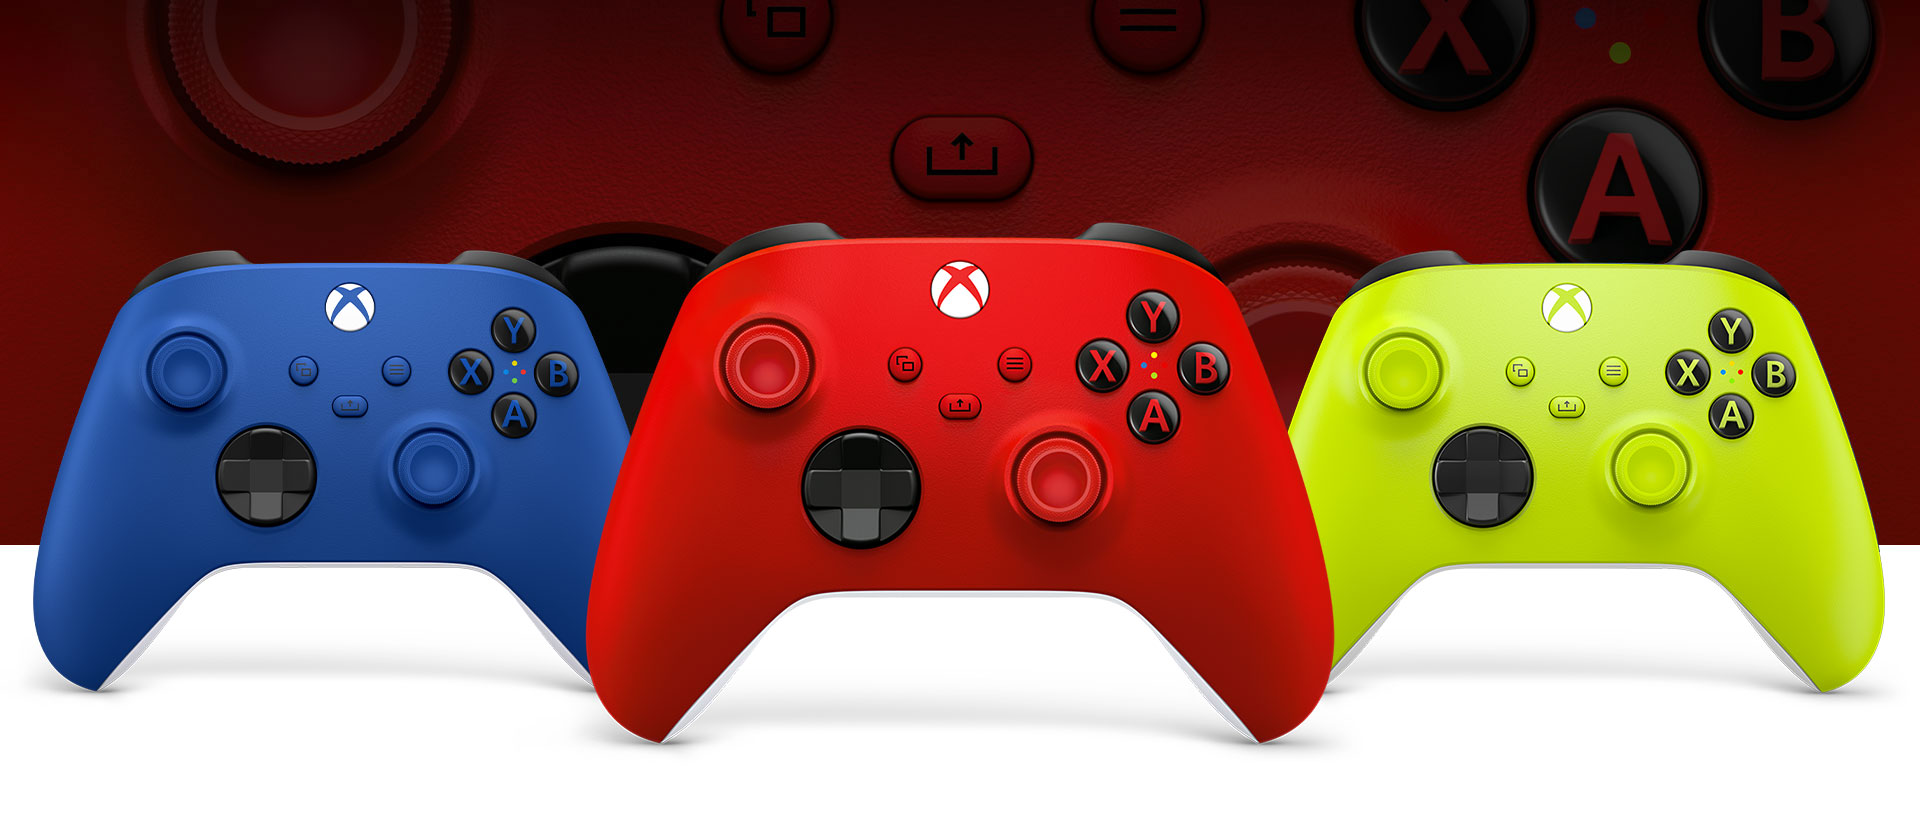 Xbox狙擊紅控制器在前方，左側是衝擊藍控制器，右側是電擊黃控制器